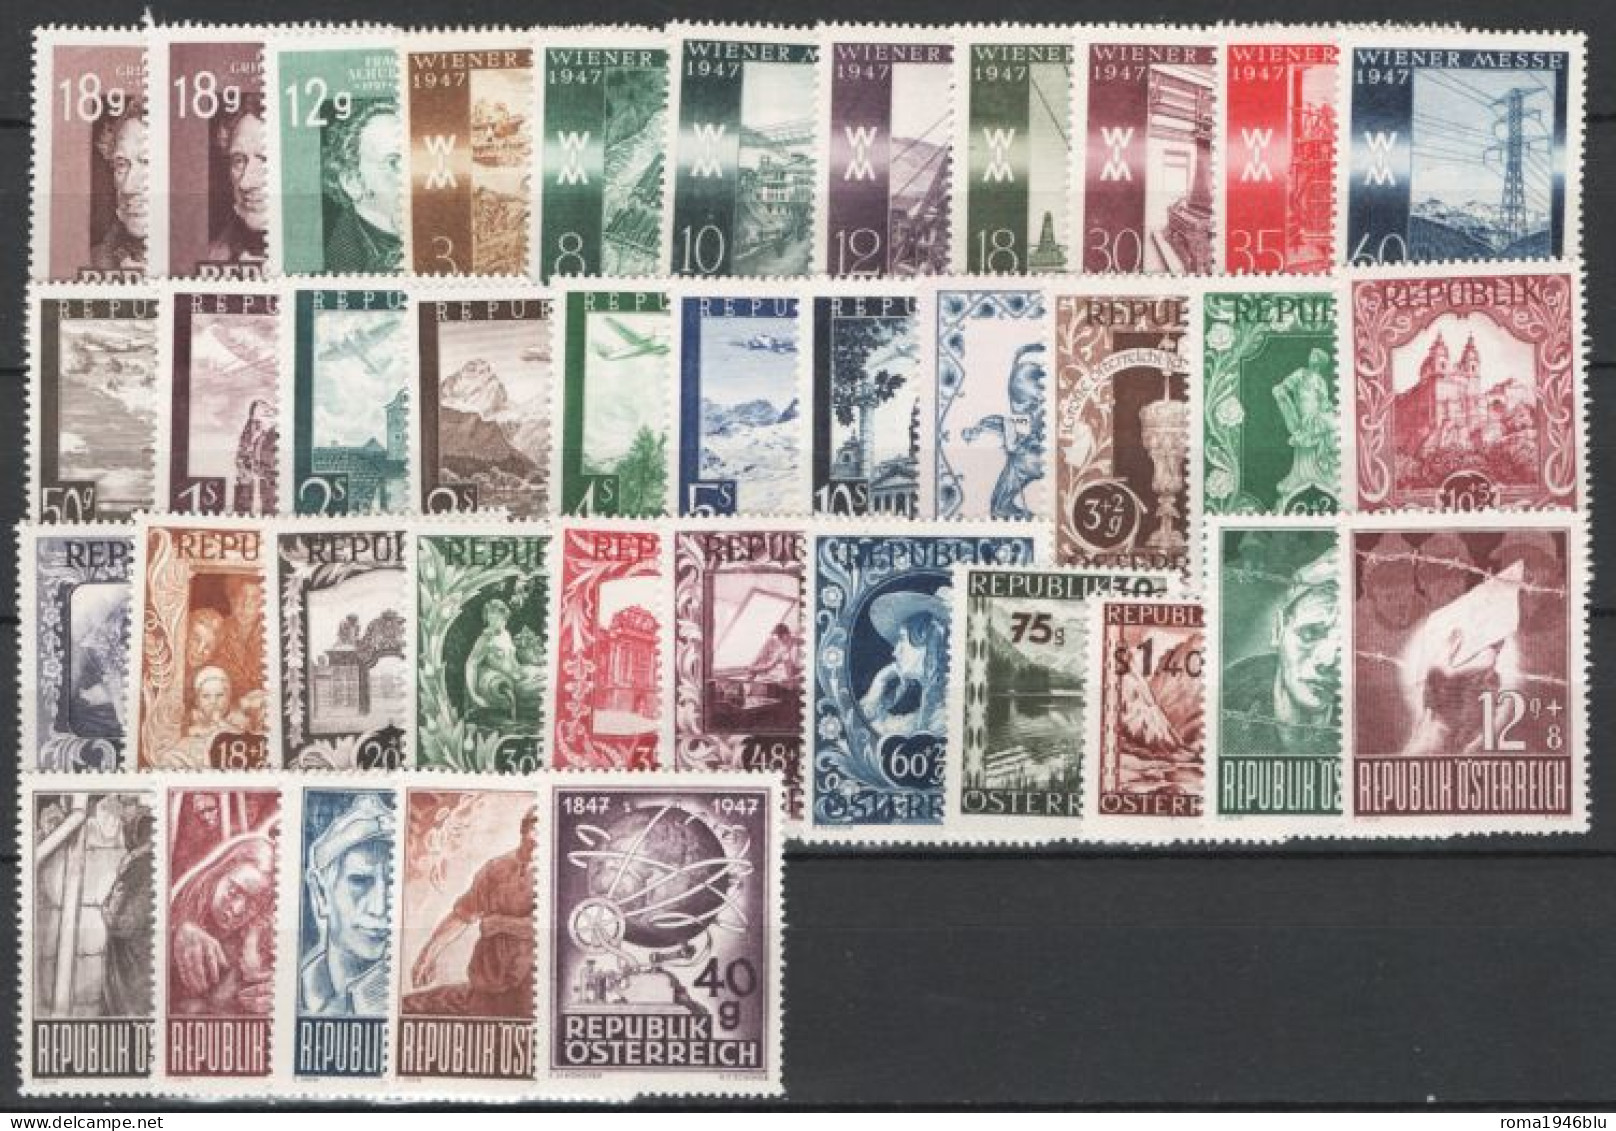 Austria 1947 Annata Completa Commemorativa  / Complete Commemorative Year Set **/MNH VF - Full Years